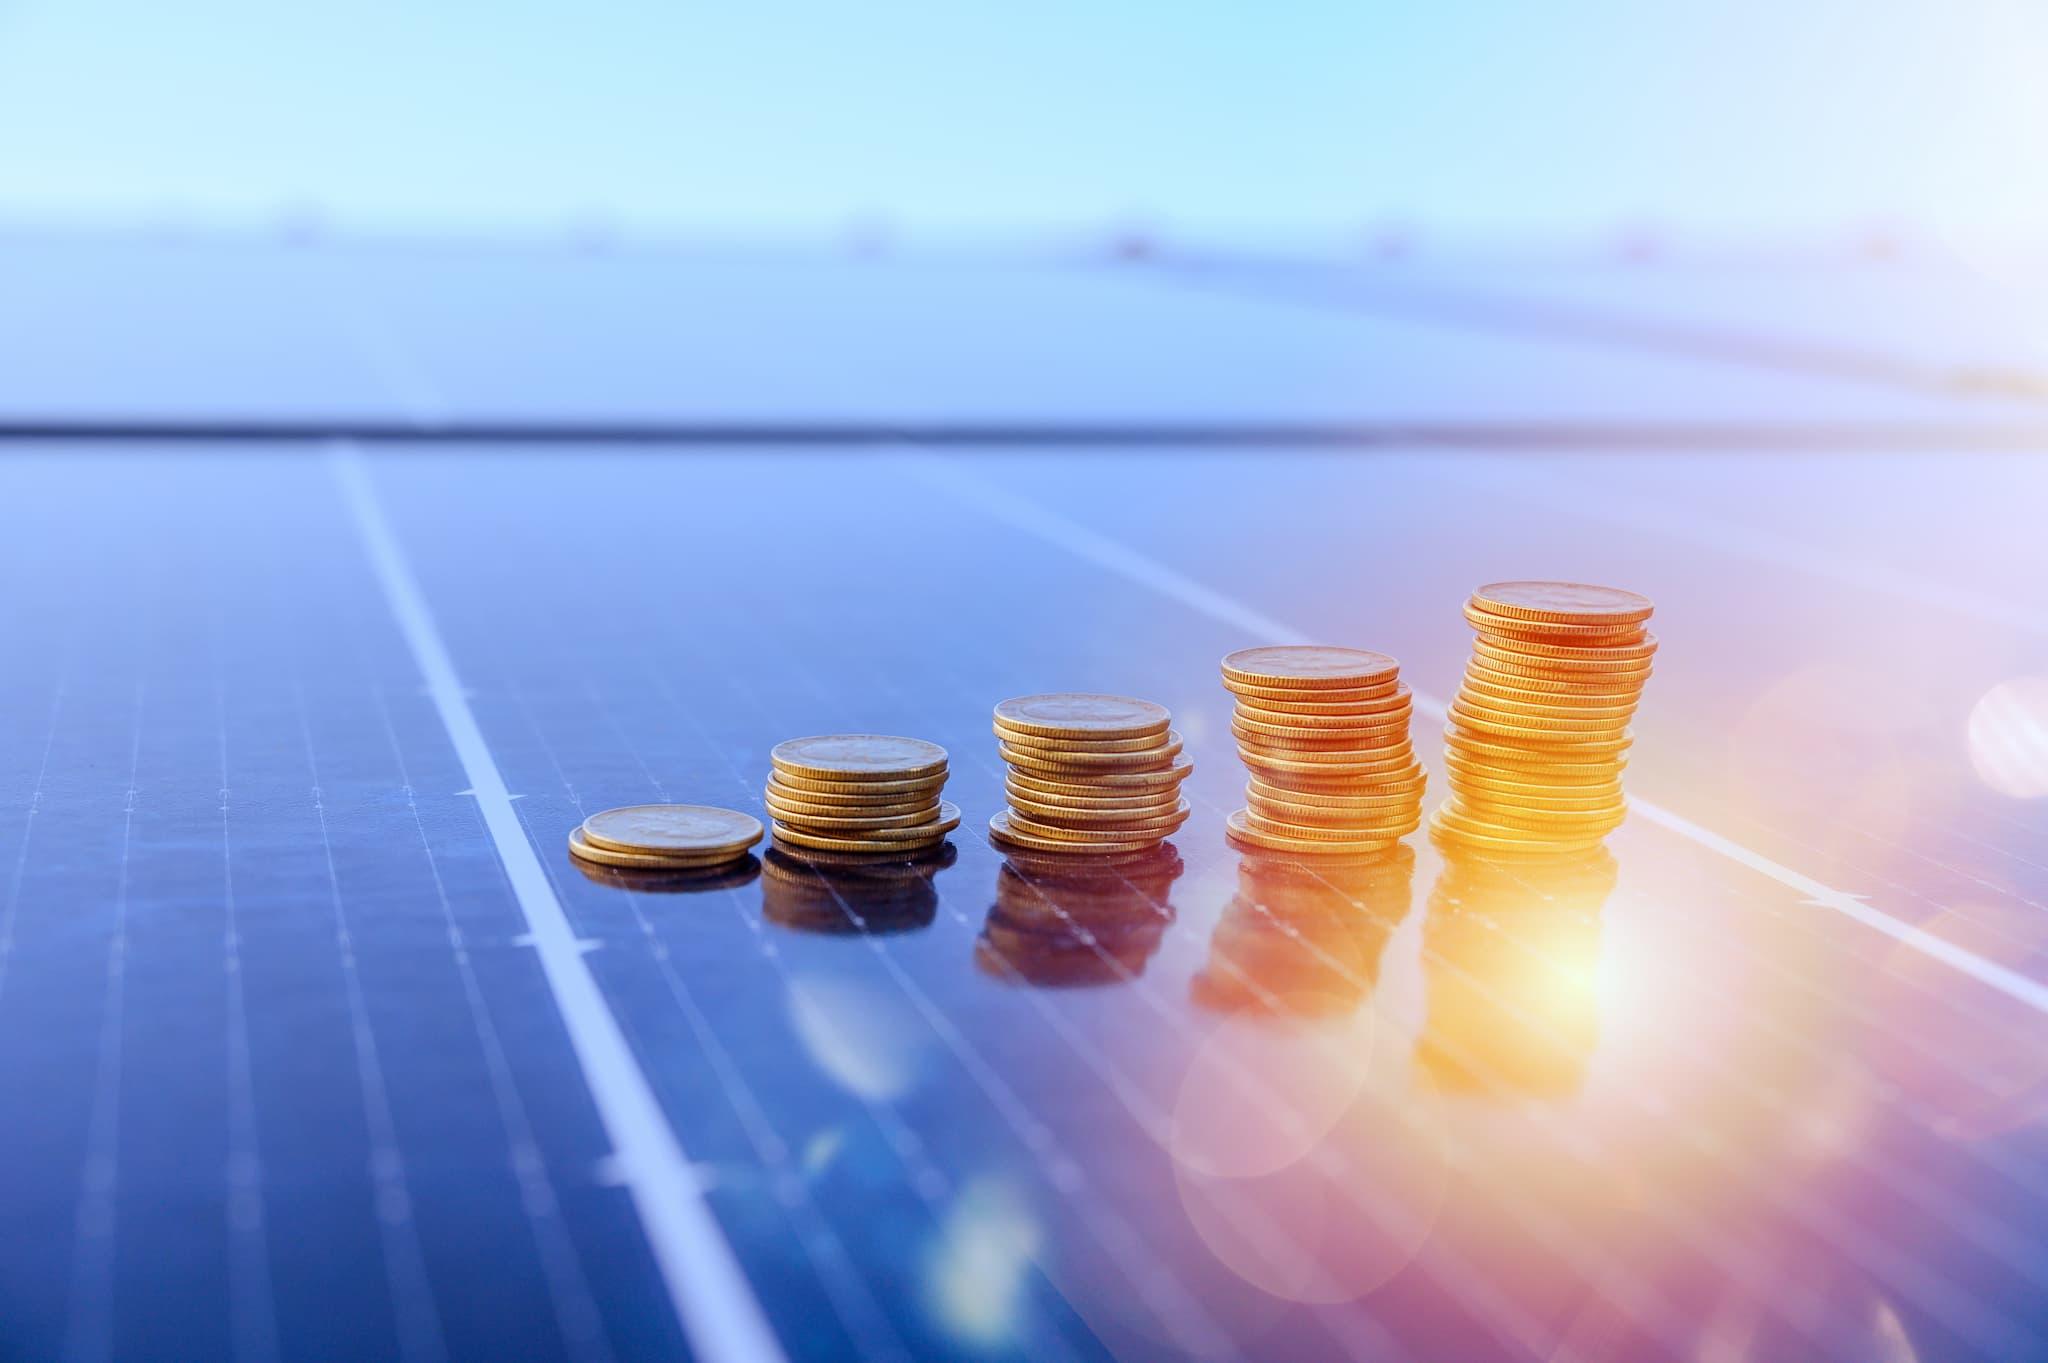 Sebrae Minas - Como organizar minhas finanças para atuar no setor de energia solar?